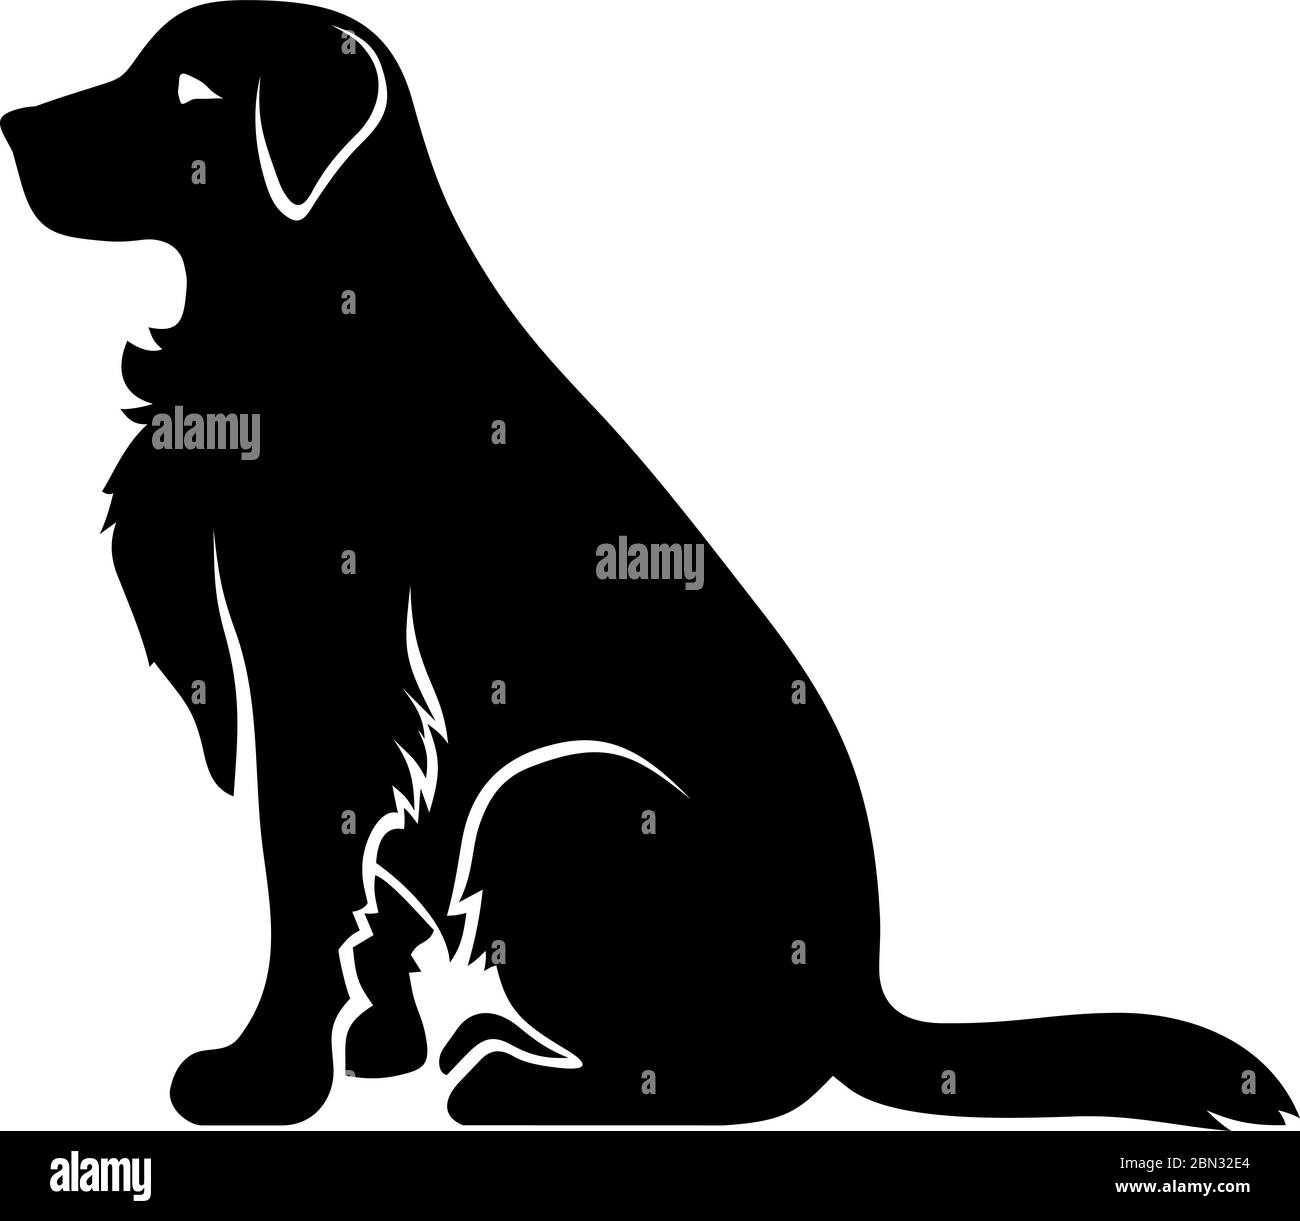 Silhouette noire vectorielle d'un chien en position assise, isolé sur un fond blanc. Illustration de Vecteur